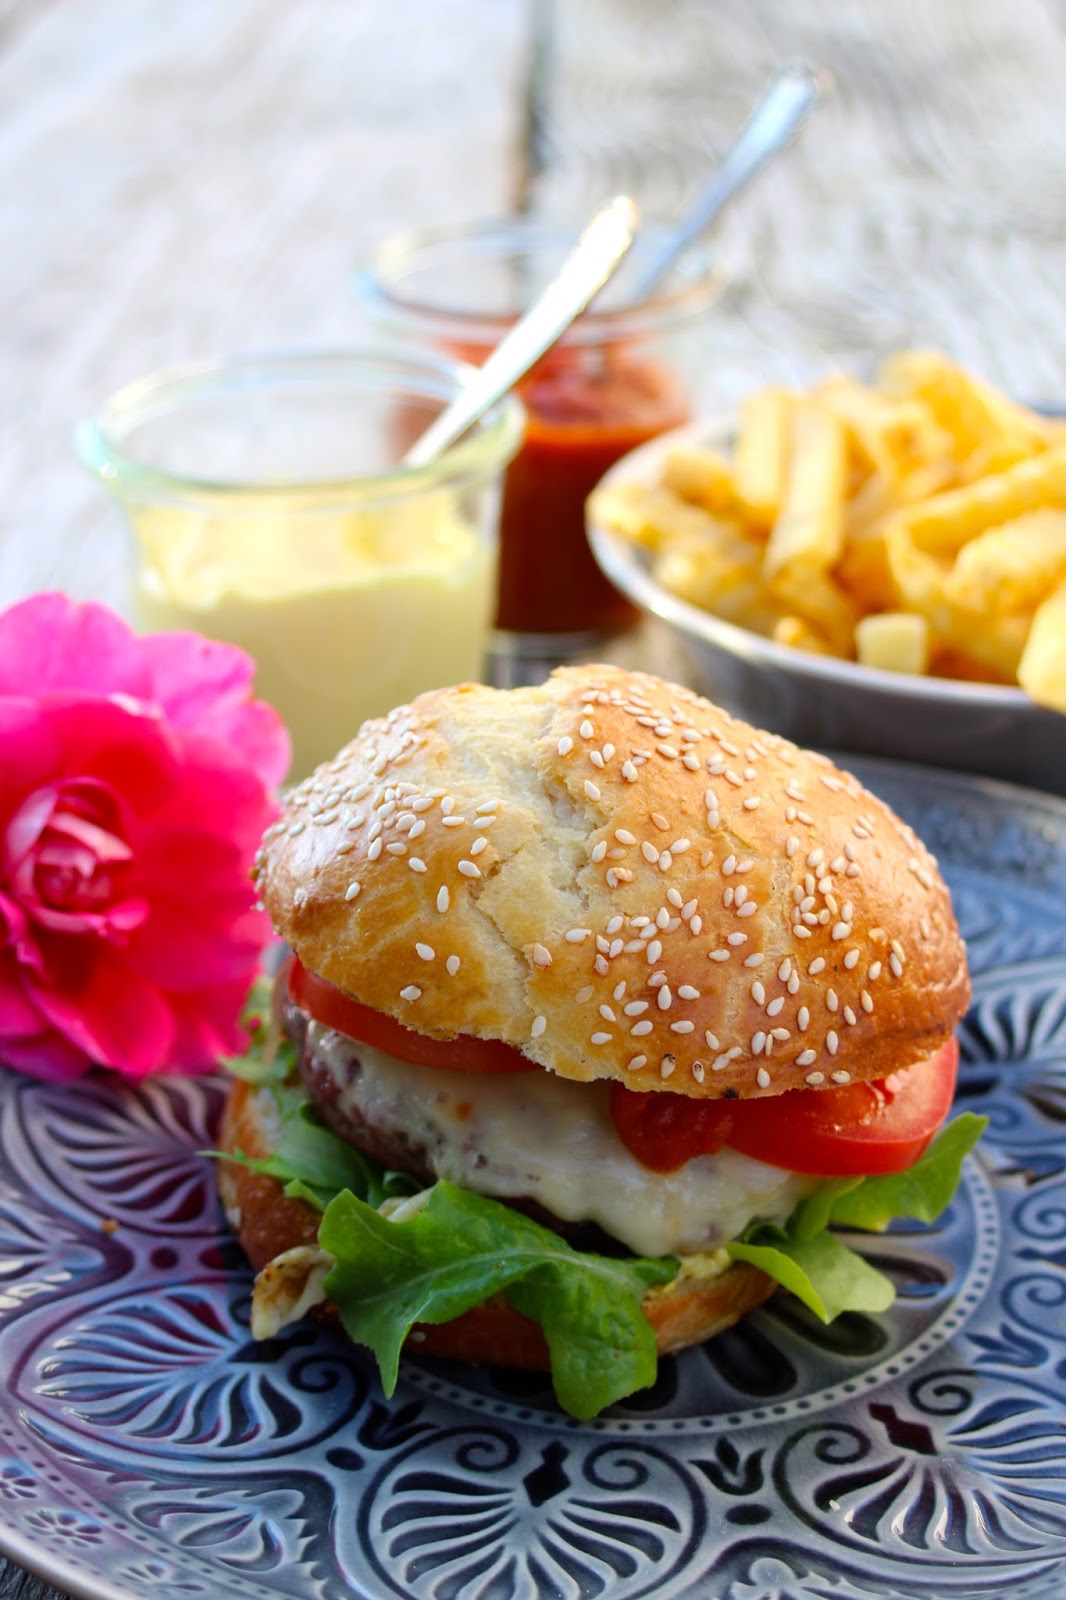 Paulas Frauchen: Perfekter Cheeseburger mit selbstgemachter Mayo &amp; Ketchup